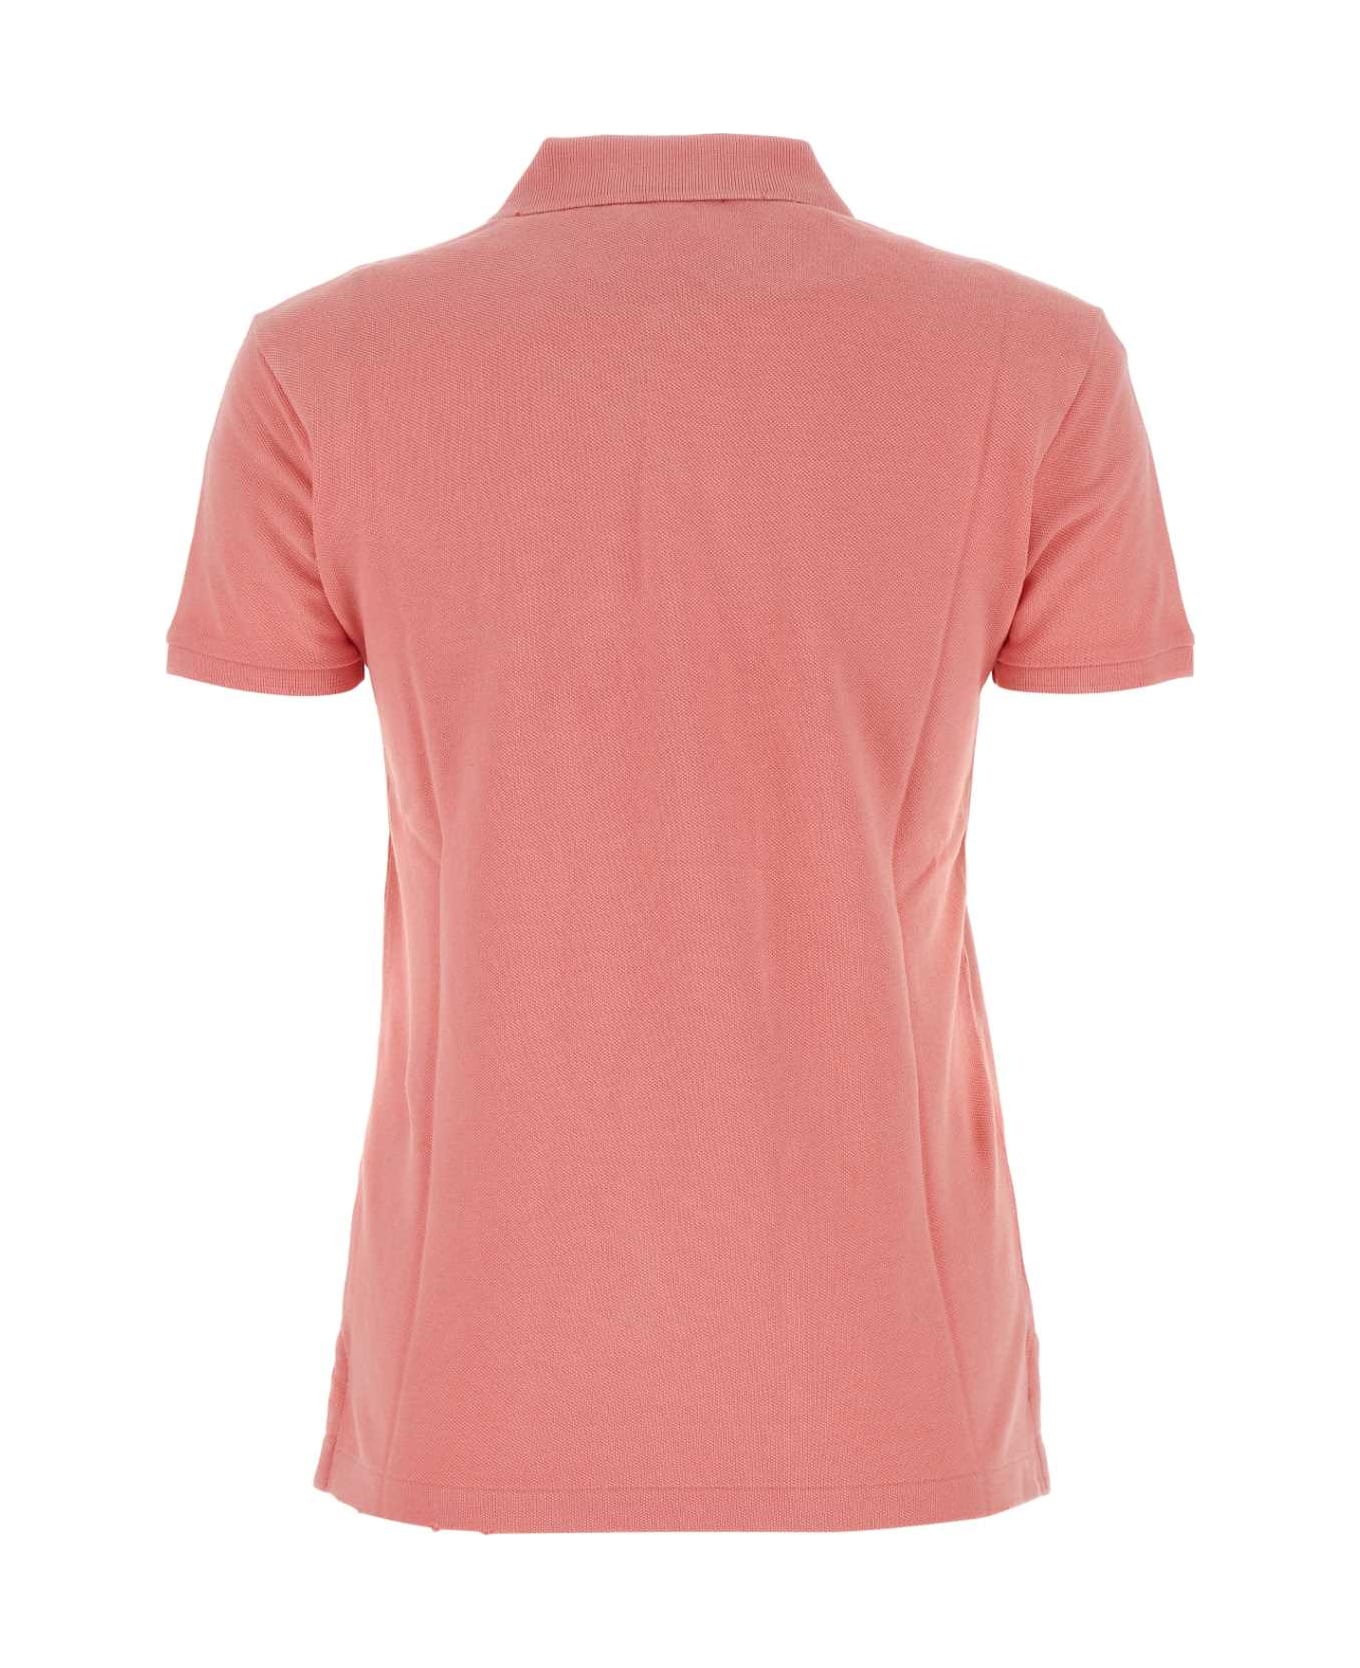 Polo Ralph Lauren Dark Pink Piquet Polo Shirt - RIBBONPINK ポロシャツ